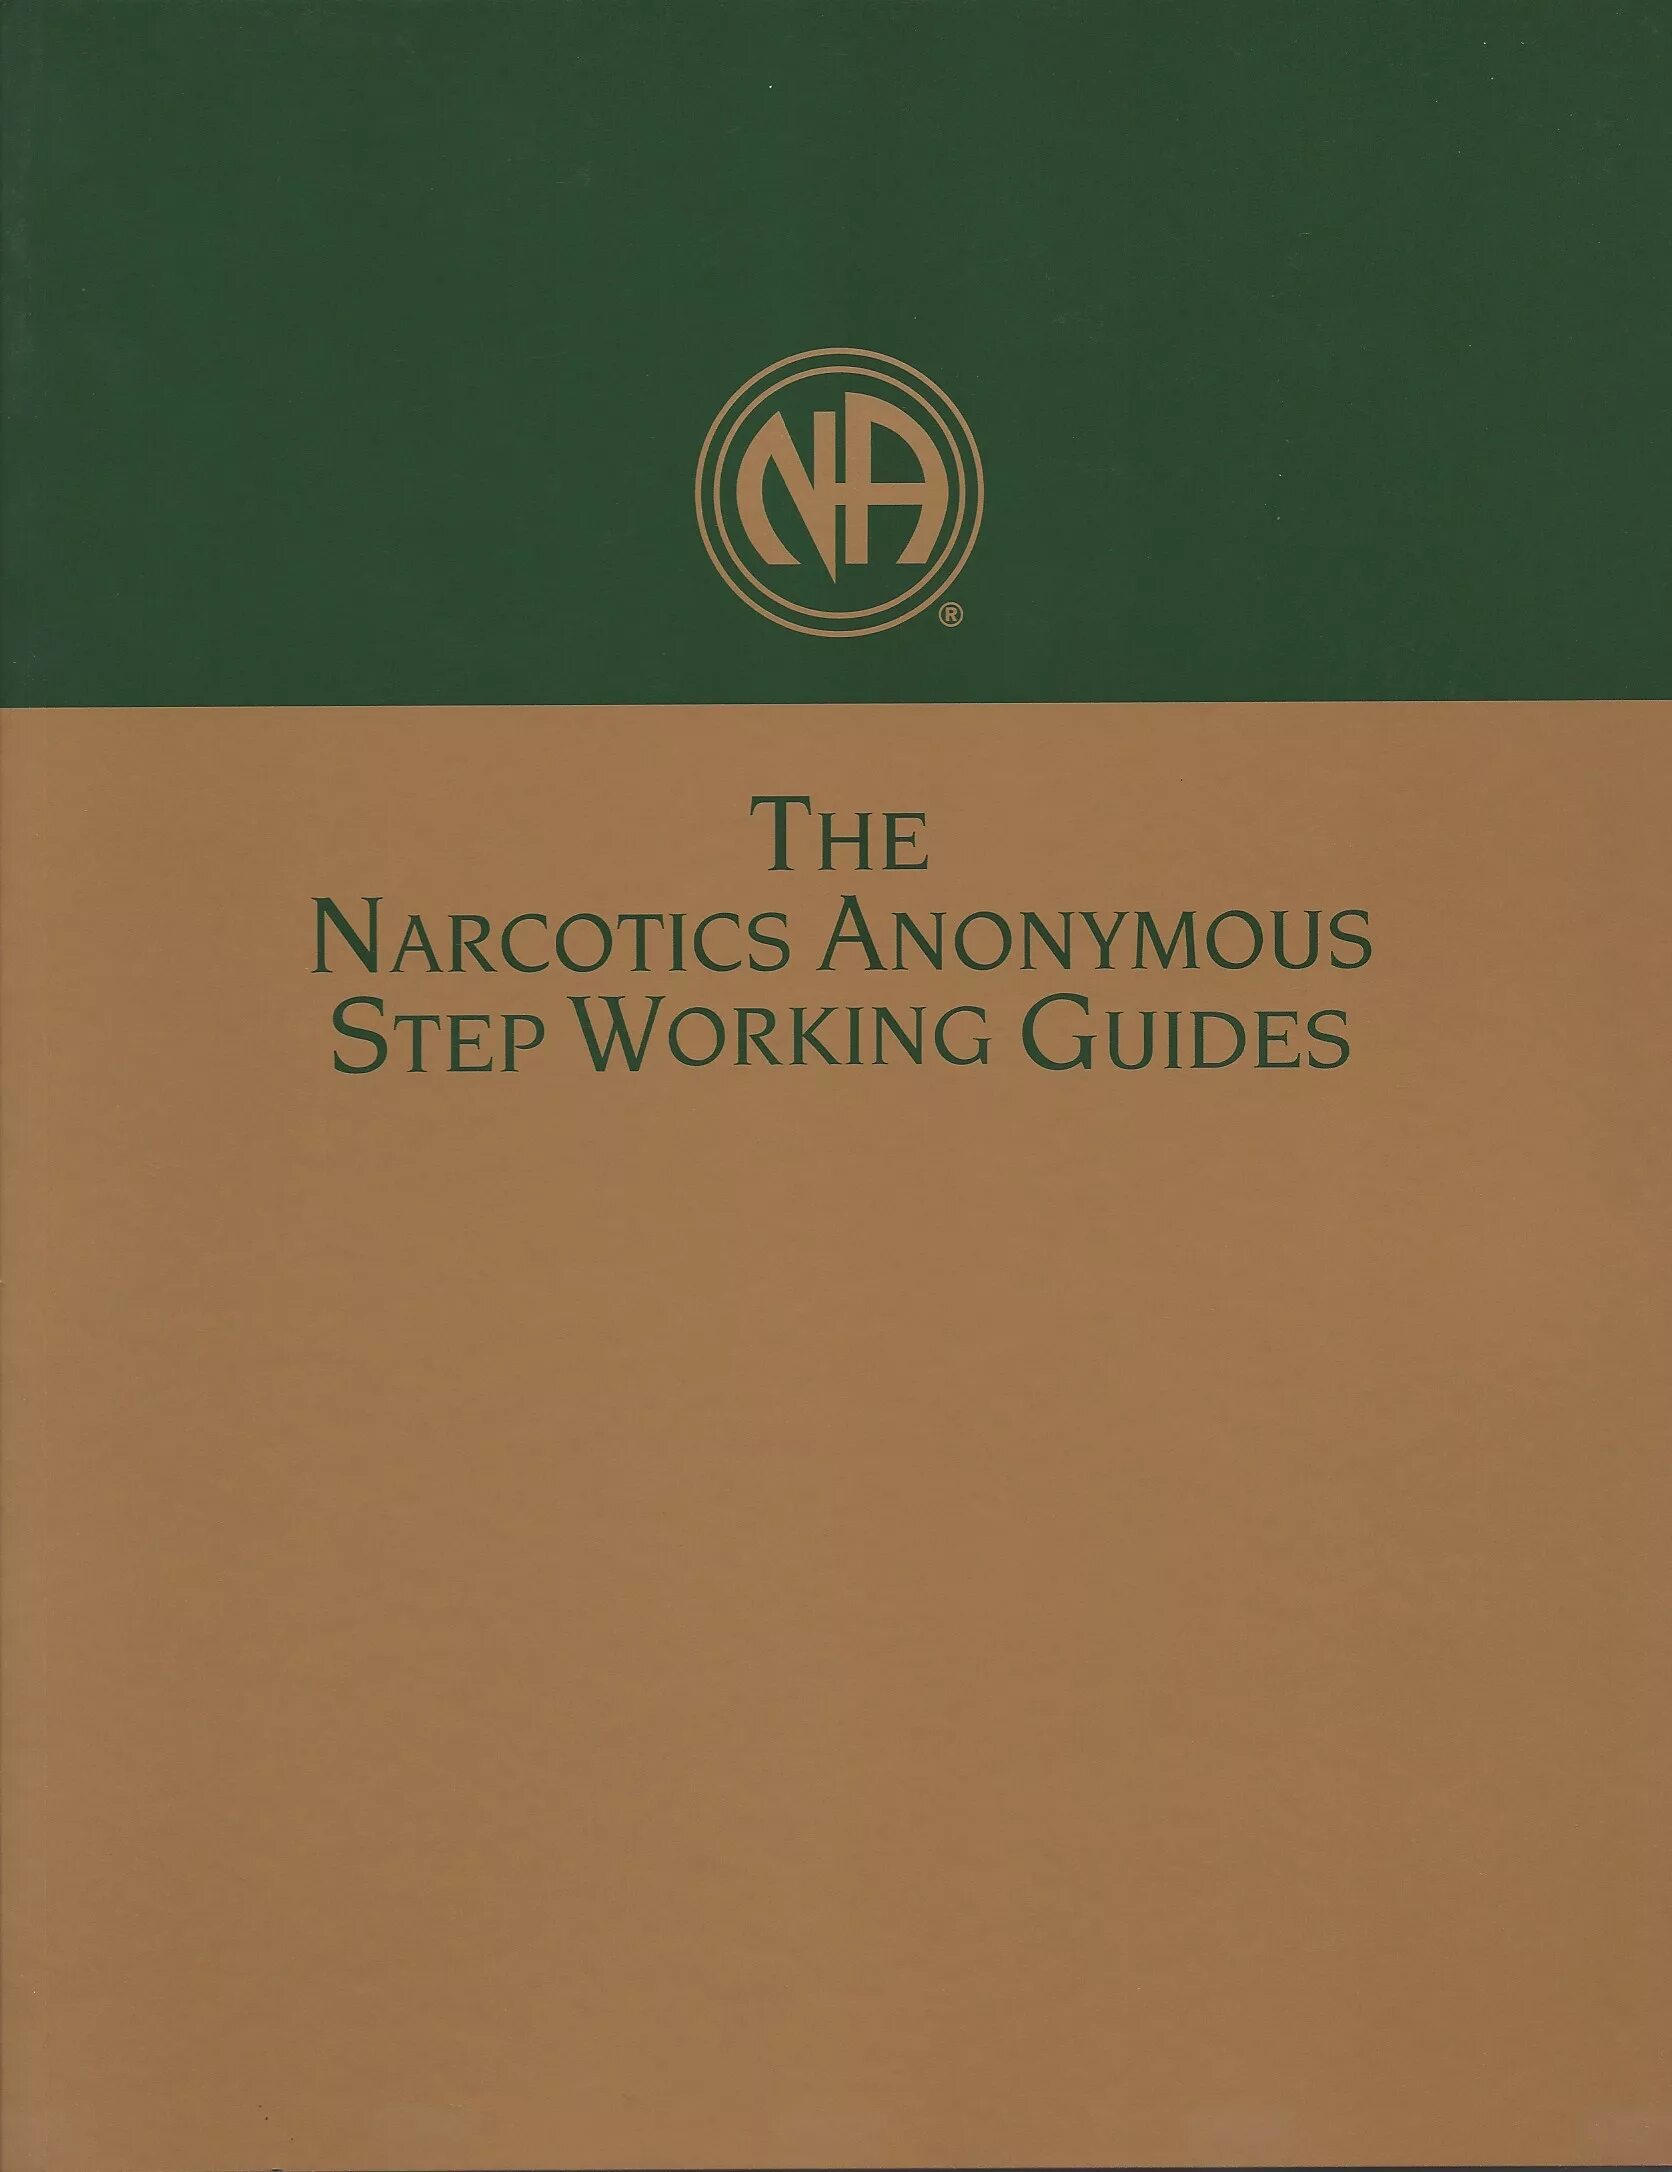 Narcotics anonymous steps. Narcotics anonymous 12 Step. Narcotics anonymous Group. США литература Narcotics anonymous. Step in working